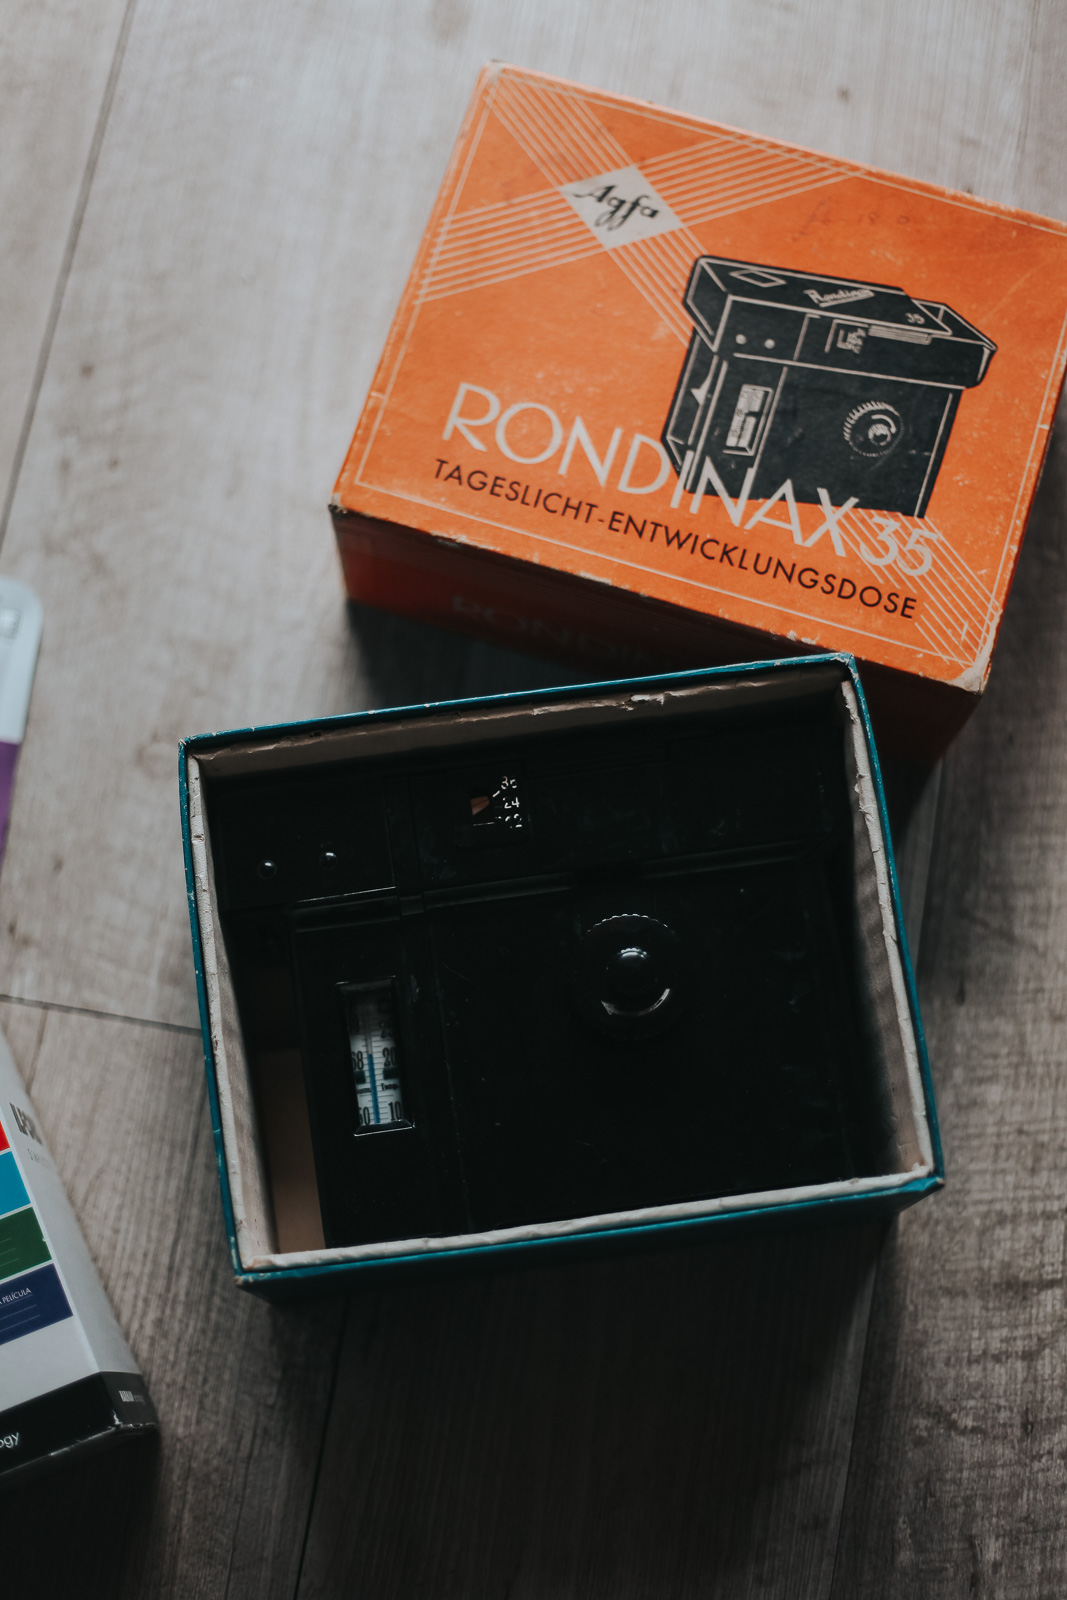 rondinax 35 develop film in daylight